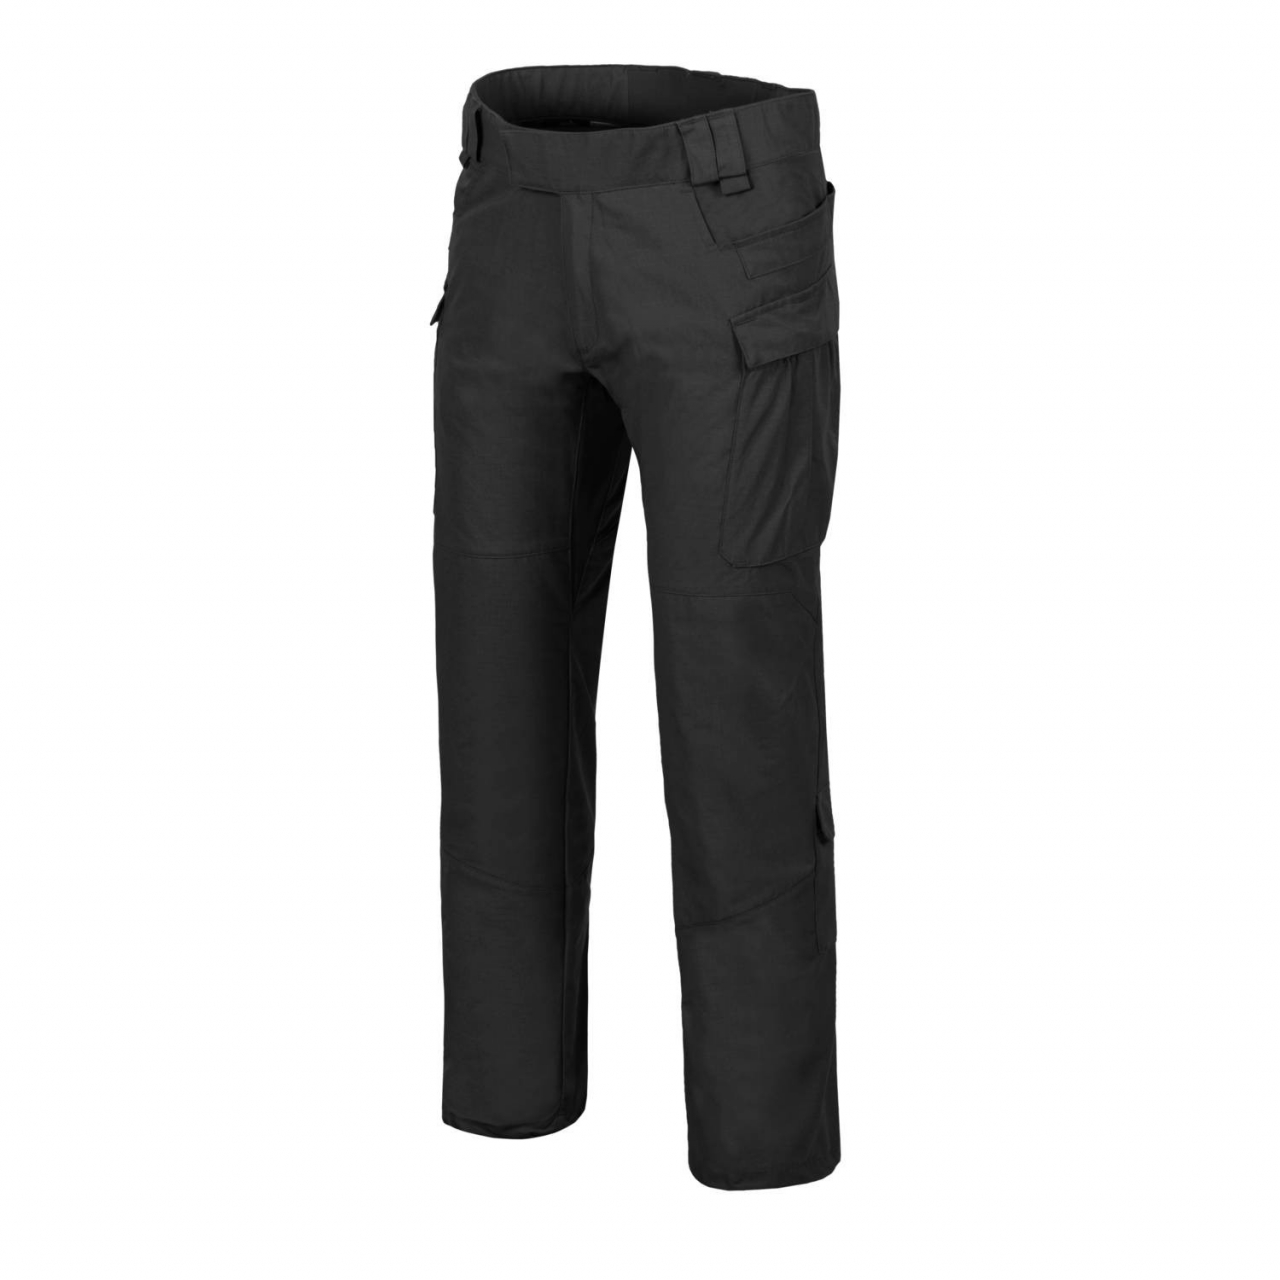 Kalhoty Helikon MBDU NyCo Ripstop - černé, S